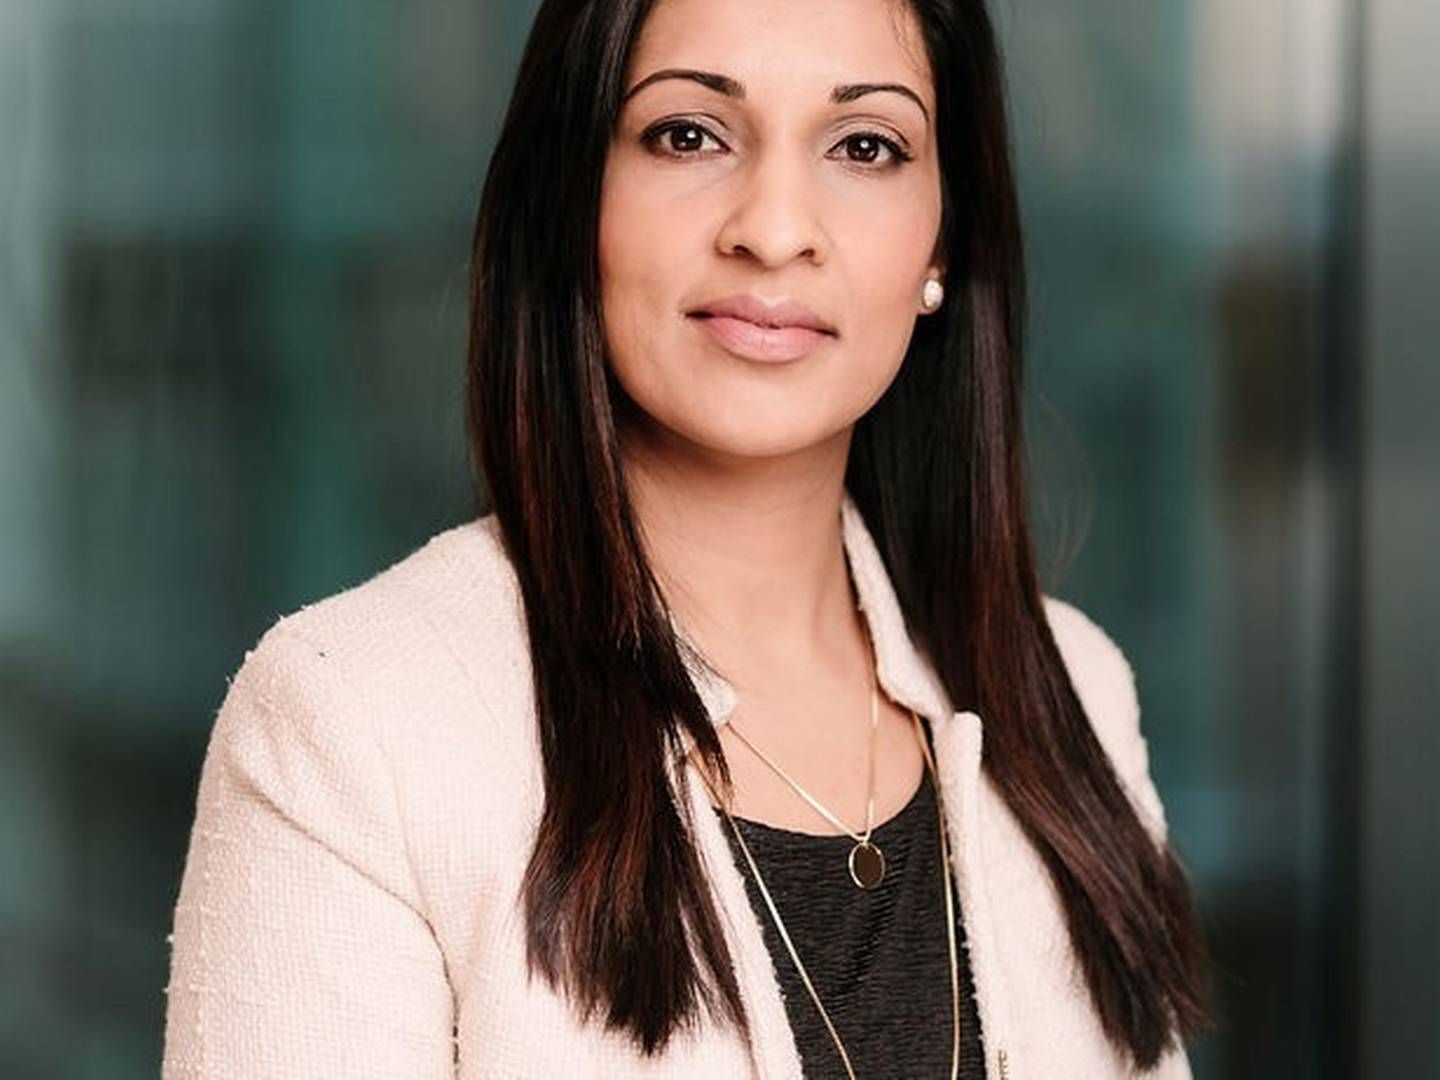 ANSATT: Samina Siddique er ansatt som administrasjonsleder i BuildingSmart Norge.